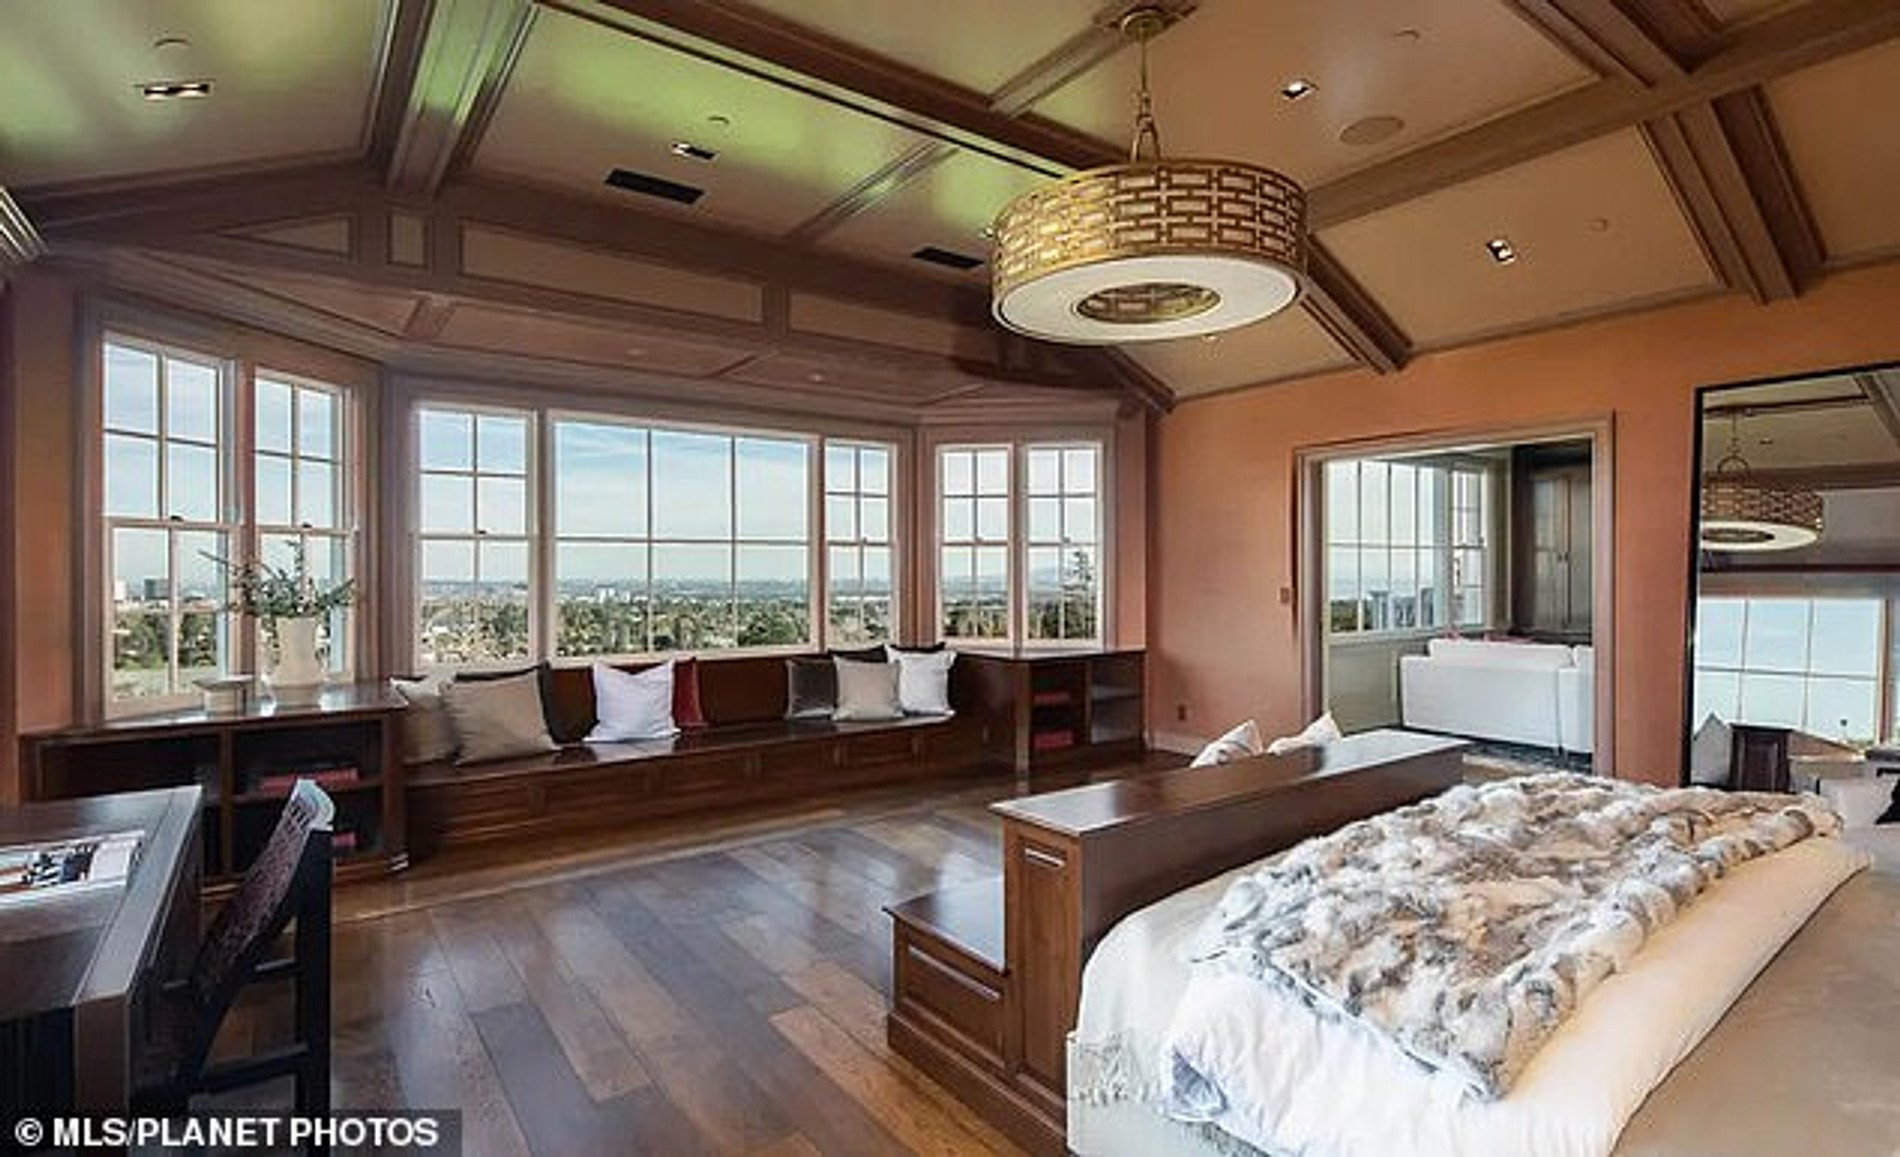 Дом стоимостью 64 миллиона долларов, который собираются купить Дженнифер Лопес и Бен Аффлек
Фото: MLS